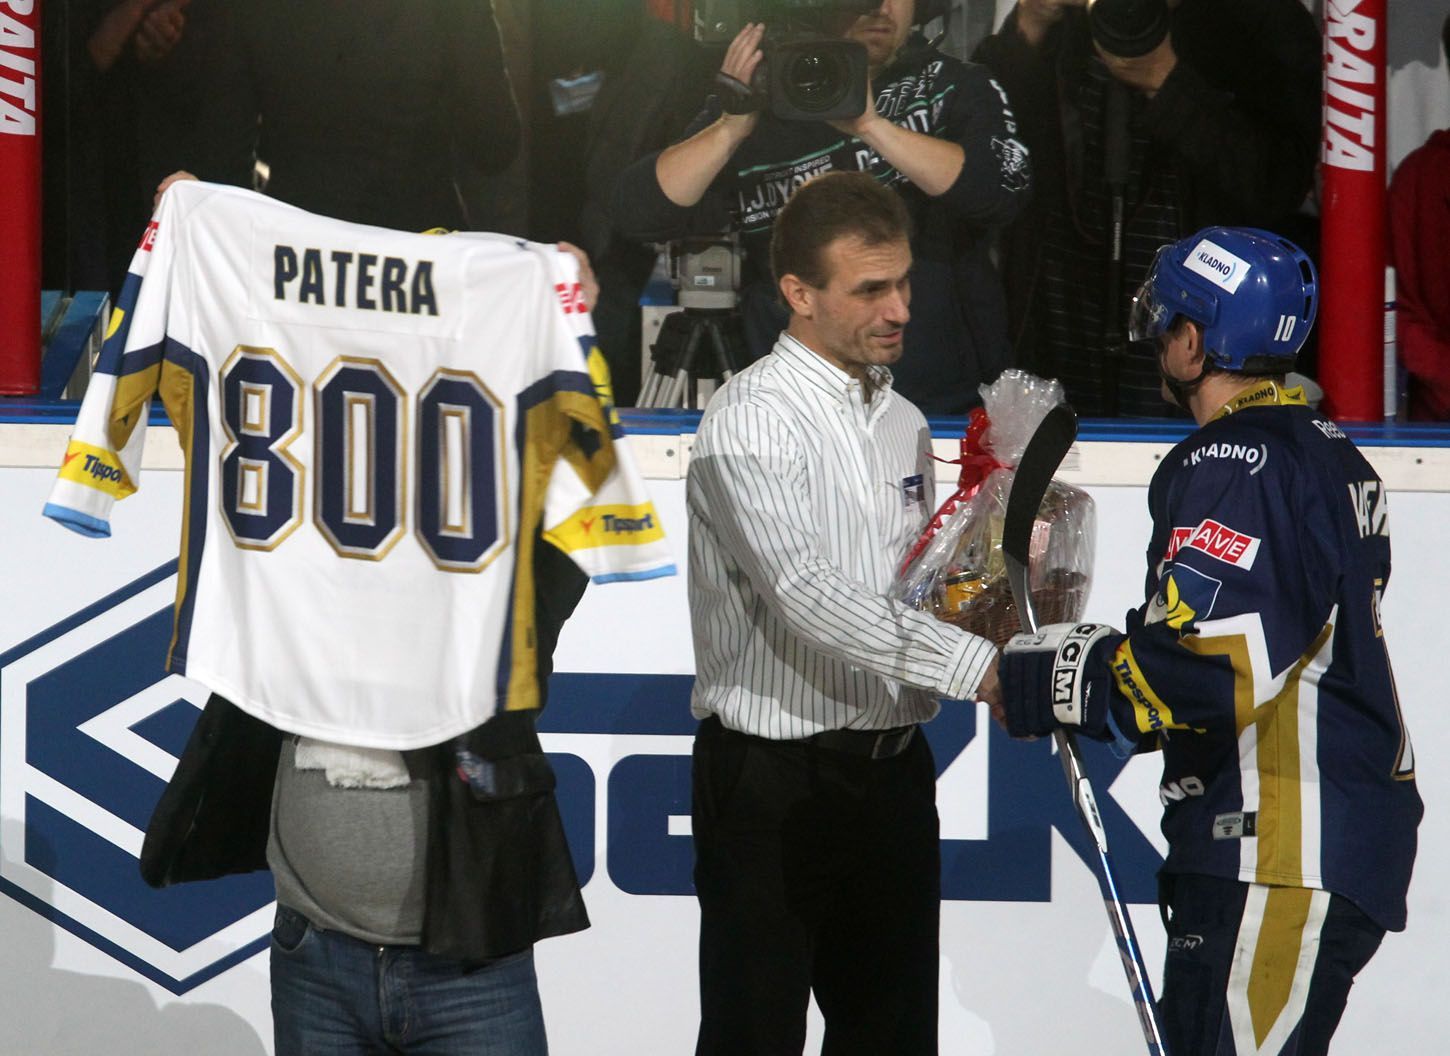 Hokejista Kladna Pavel Patera přebírá slavnostní dres za 800 odehraných utkání v nejvyšší české soutěži během utkání proti Kometě Brno během 15. kola Tipsport extraligy 2012/13.